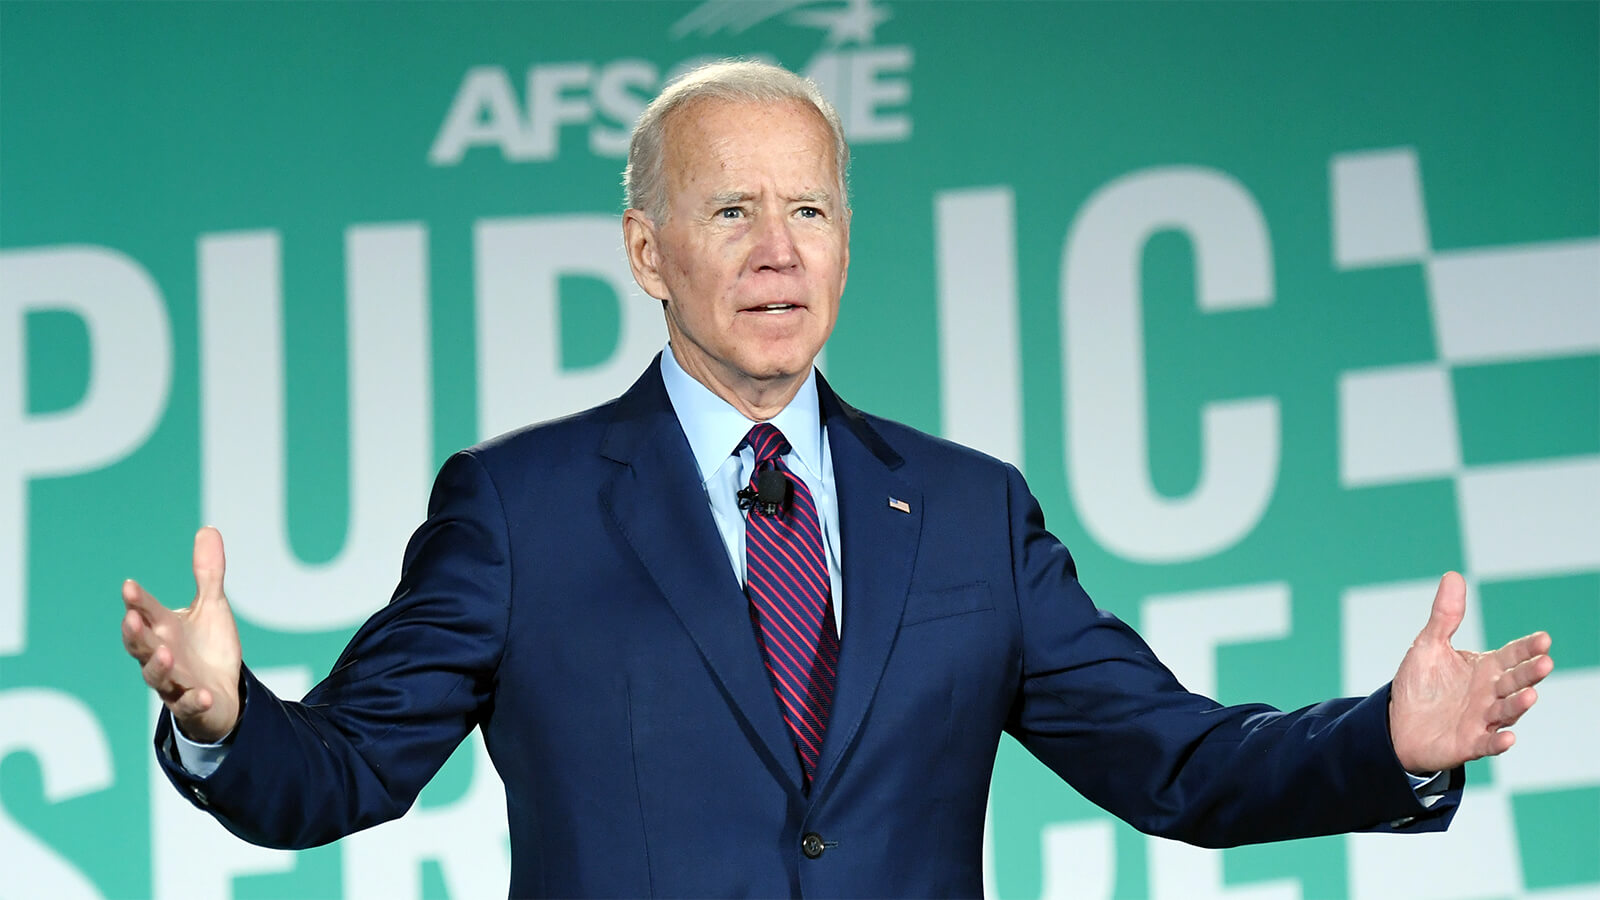 AFSCME respalda a Biden en base a su larga trayectoria de apoyo por los trabajadores